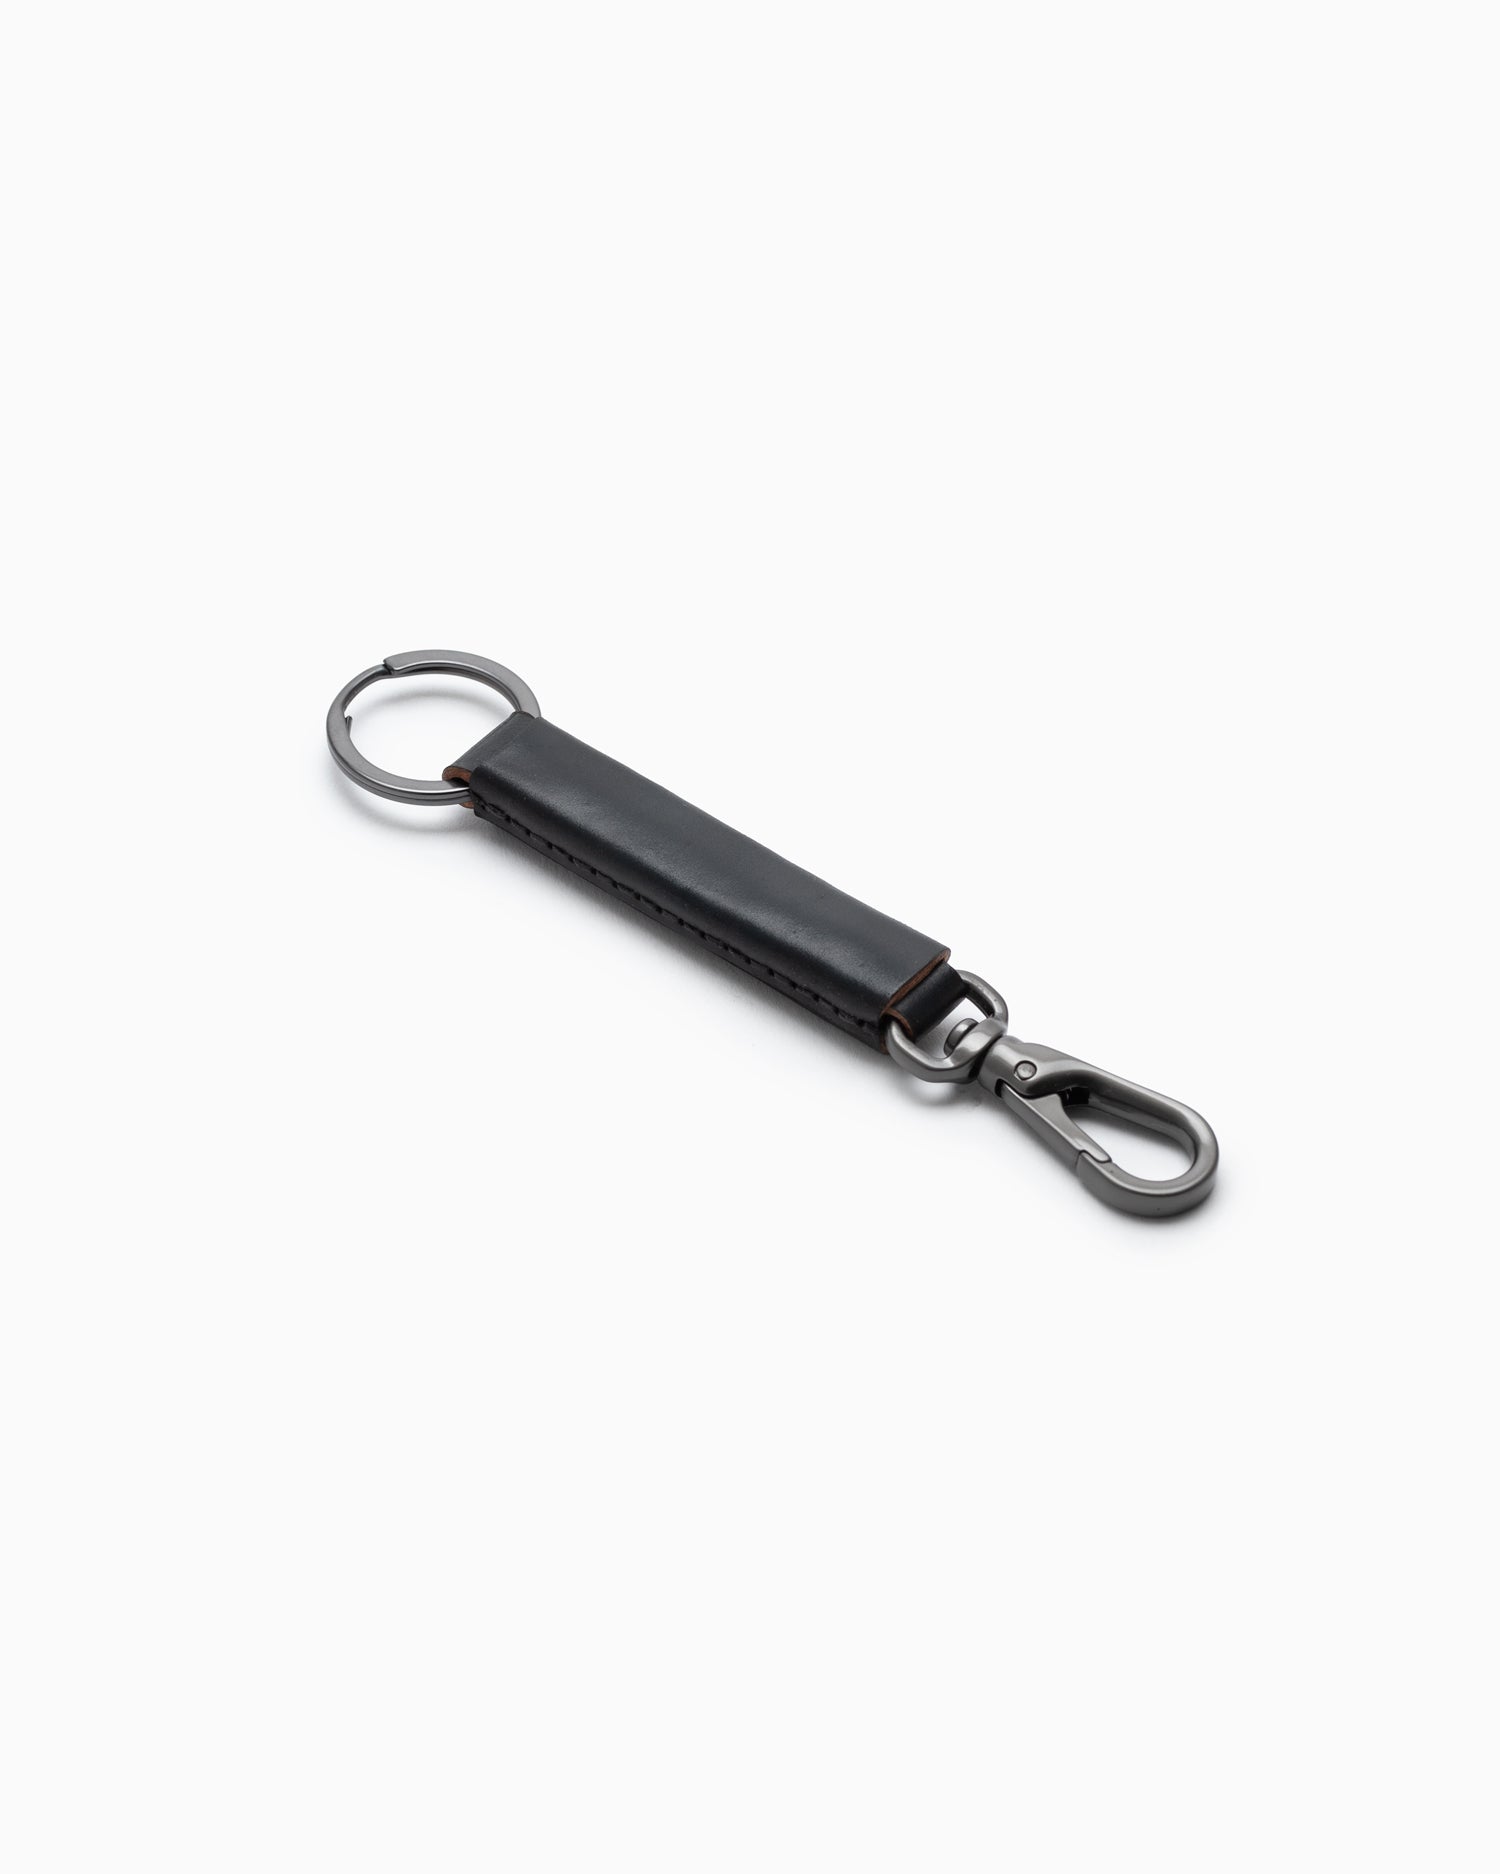 Loop Keychain with Snap Hook - Black